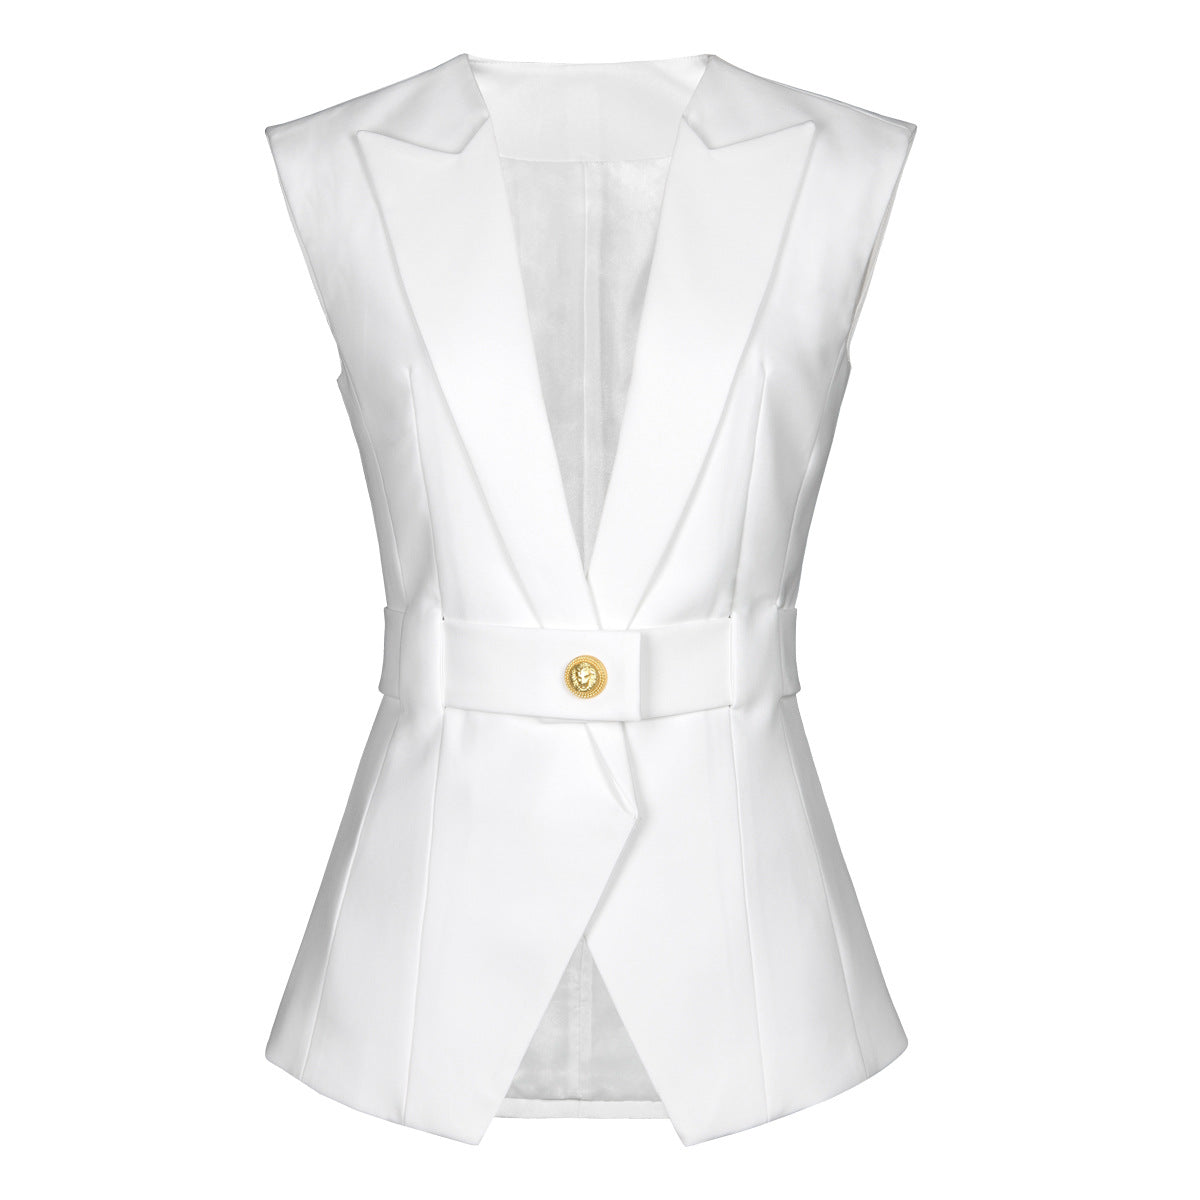 Summer Advanced Sleeveless Slim Fit Office Women Business Vest for Women